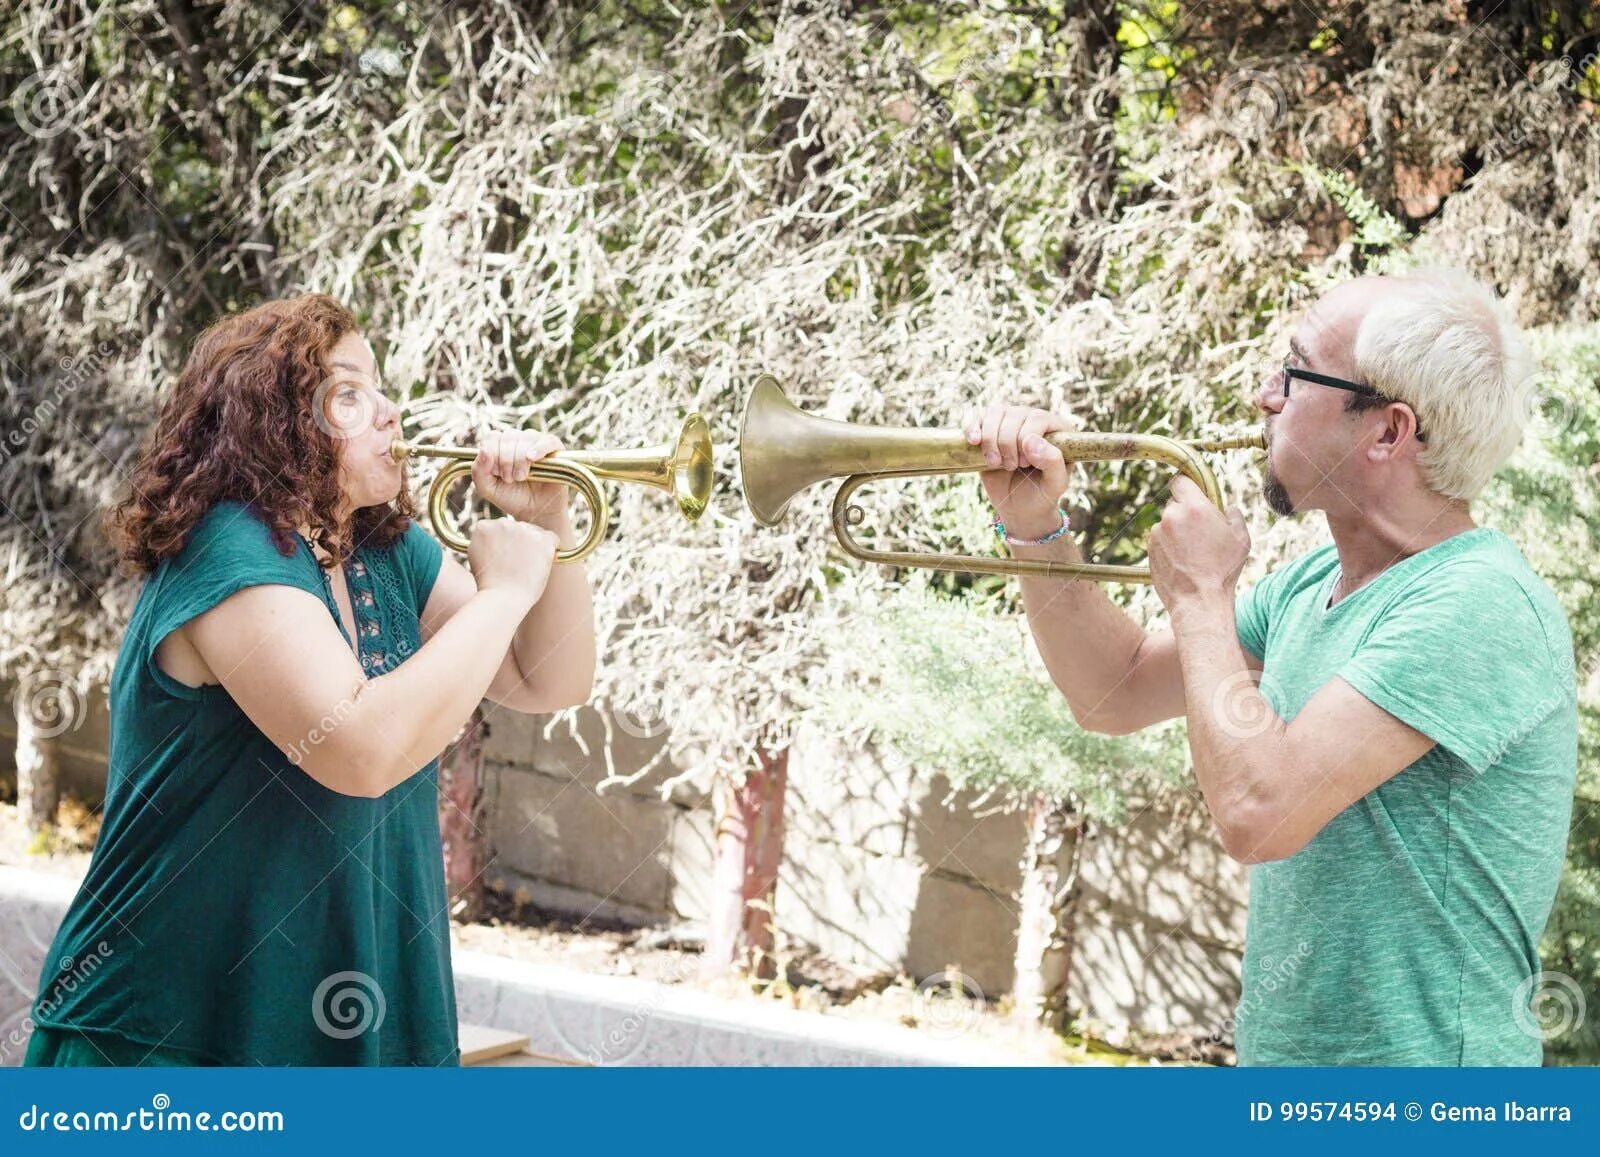 Музыка играет труба. Женщина трубач. Женщина играет на трубе. Люди играющие на БАБАХЕ.